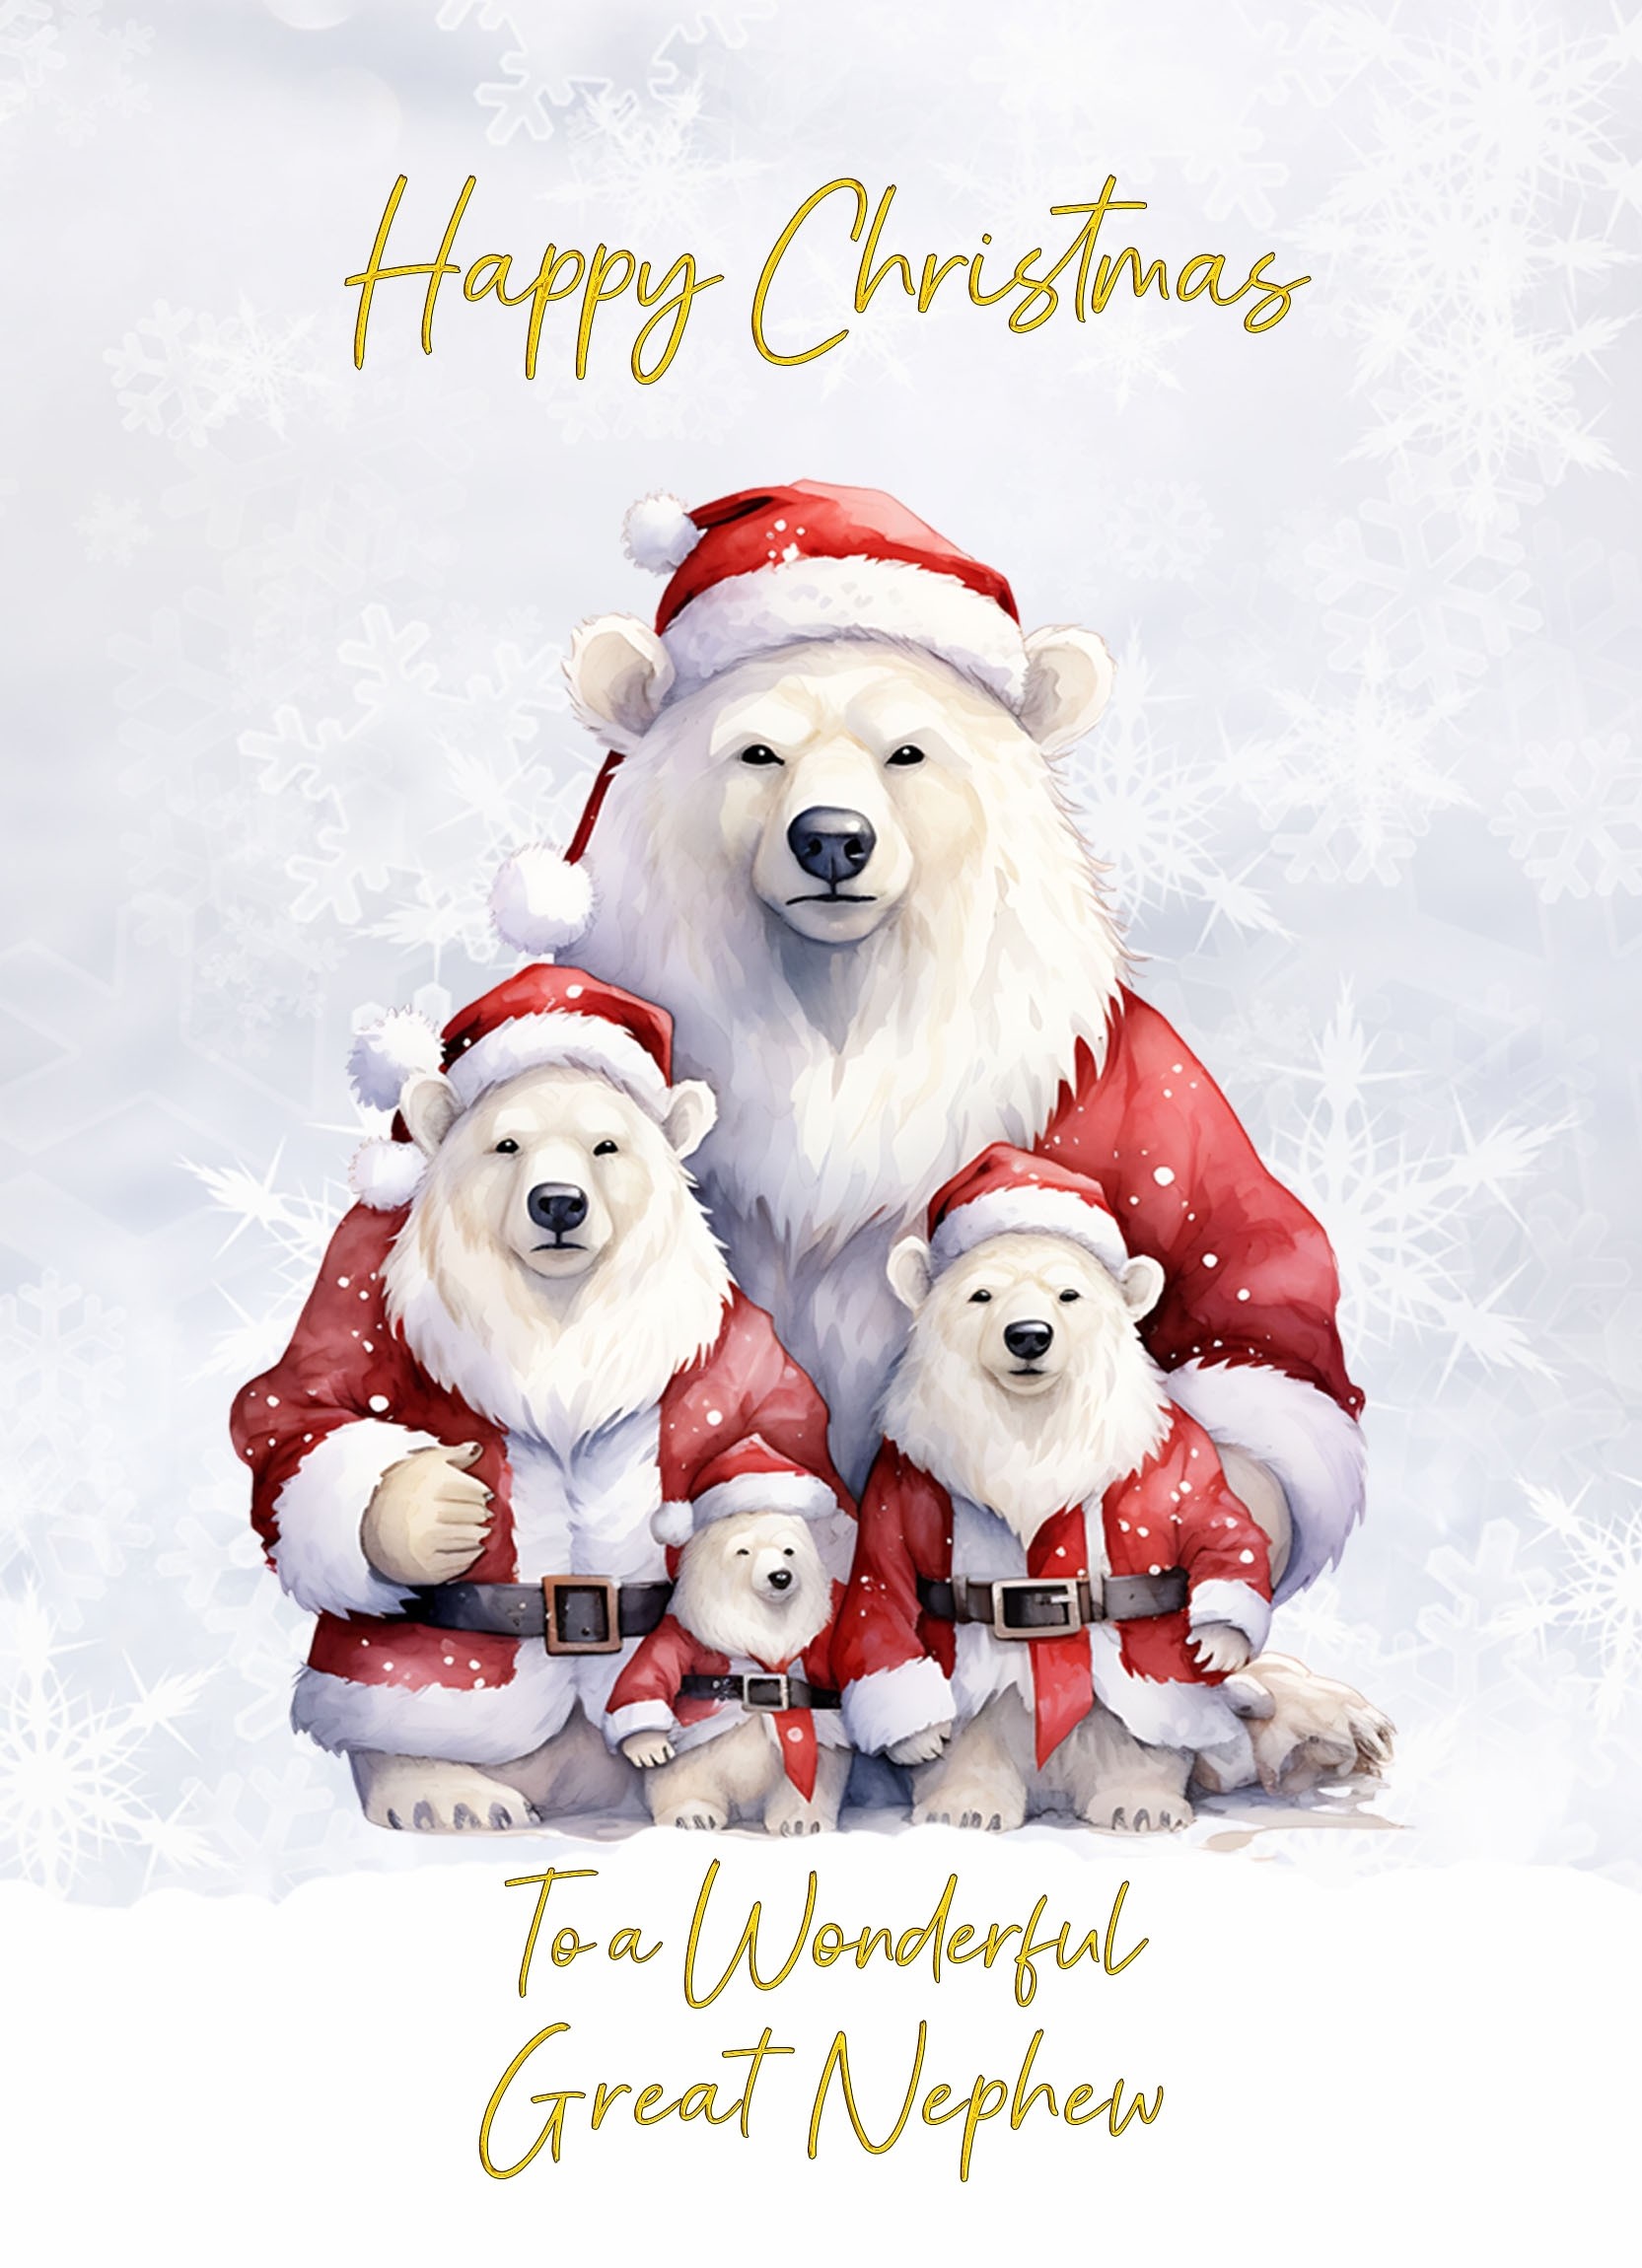 Christmas Card For Great Nephew (Polar Bear Family Art)